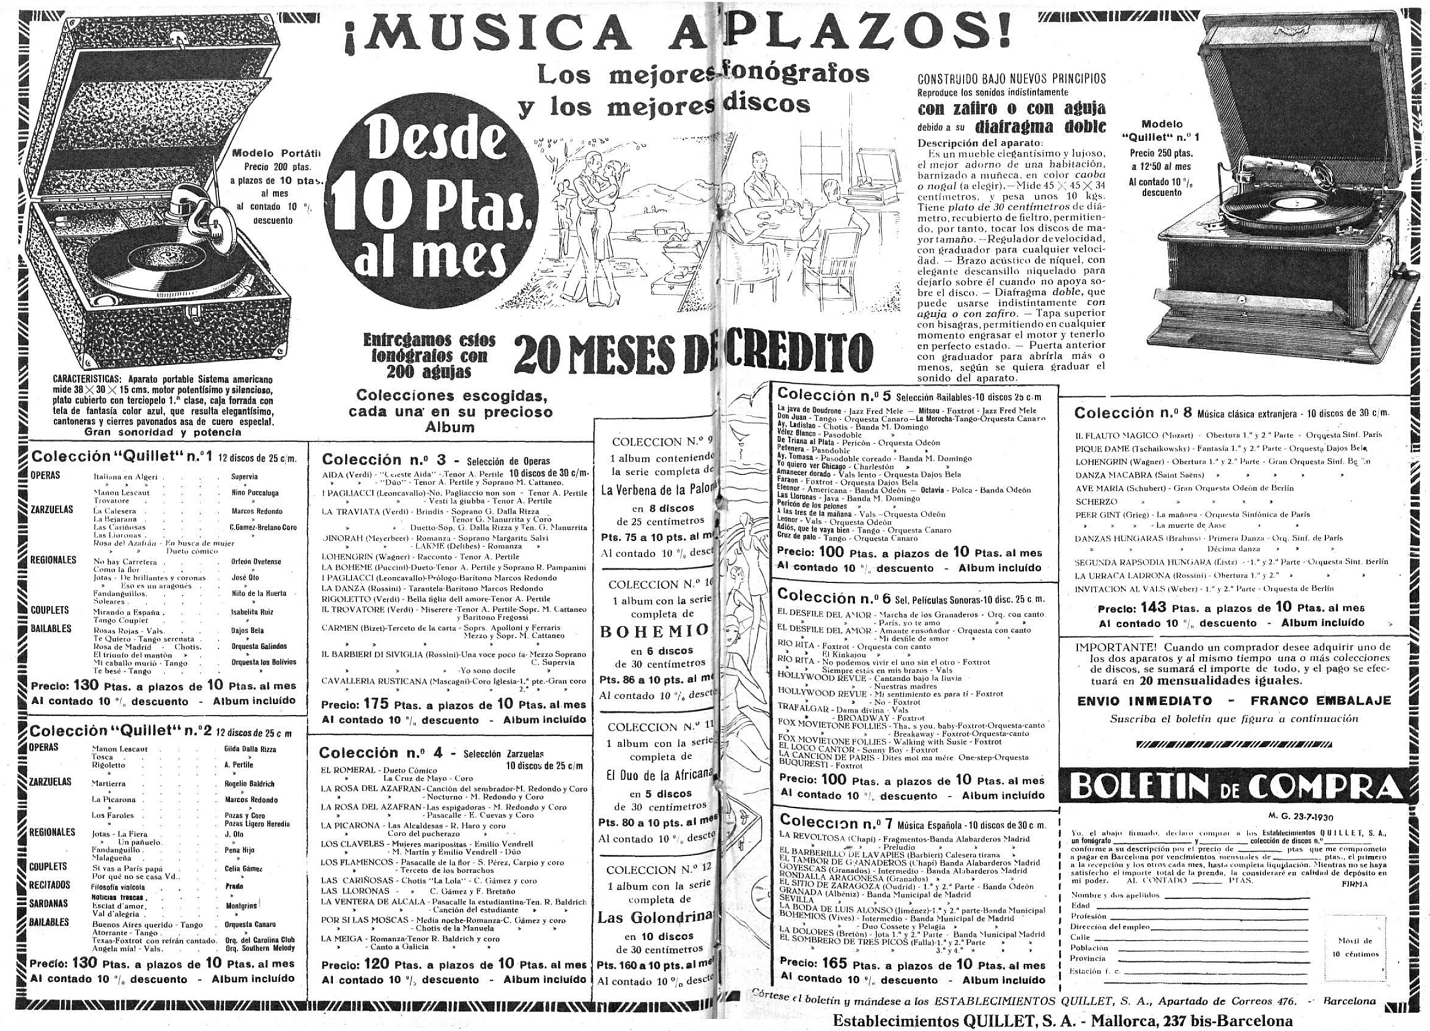 Discografía de la Banda Municipal de Madrid Mundo Gráfico, 23 de julio de 1930.